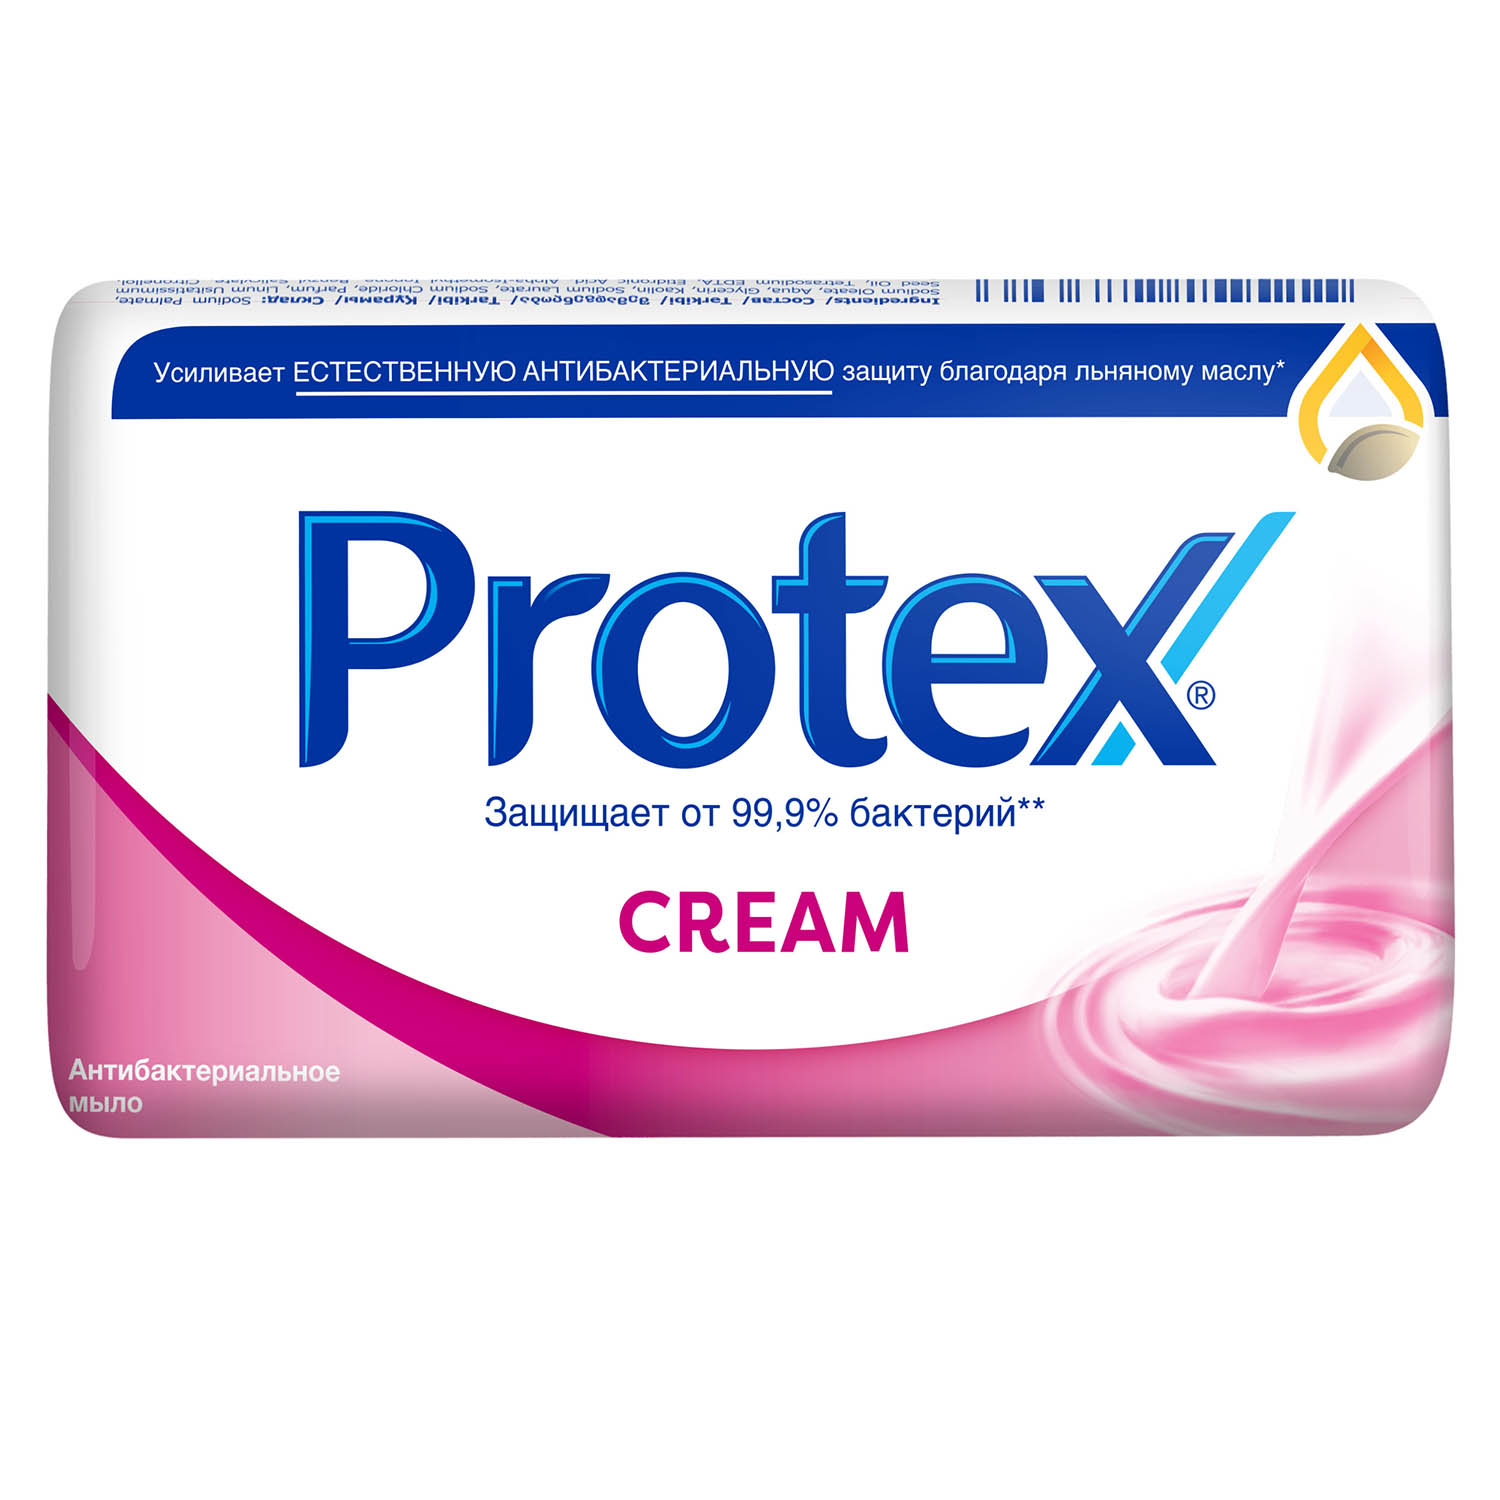 Мыло туалетное Protex Cream антибактериальное, 150 г мыло туалетное protex ultra антибактериальное с льняным маслом 90 гр